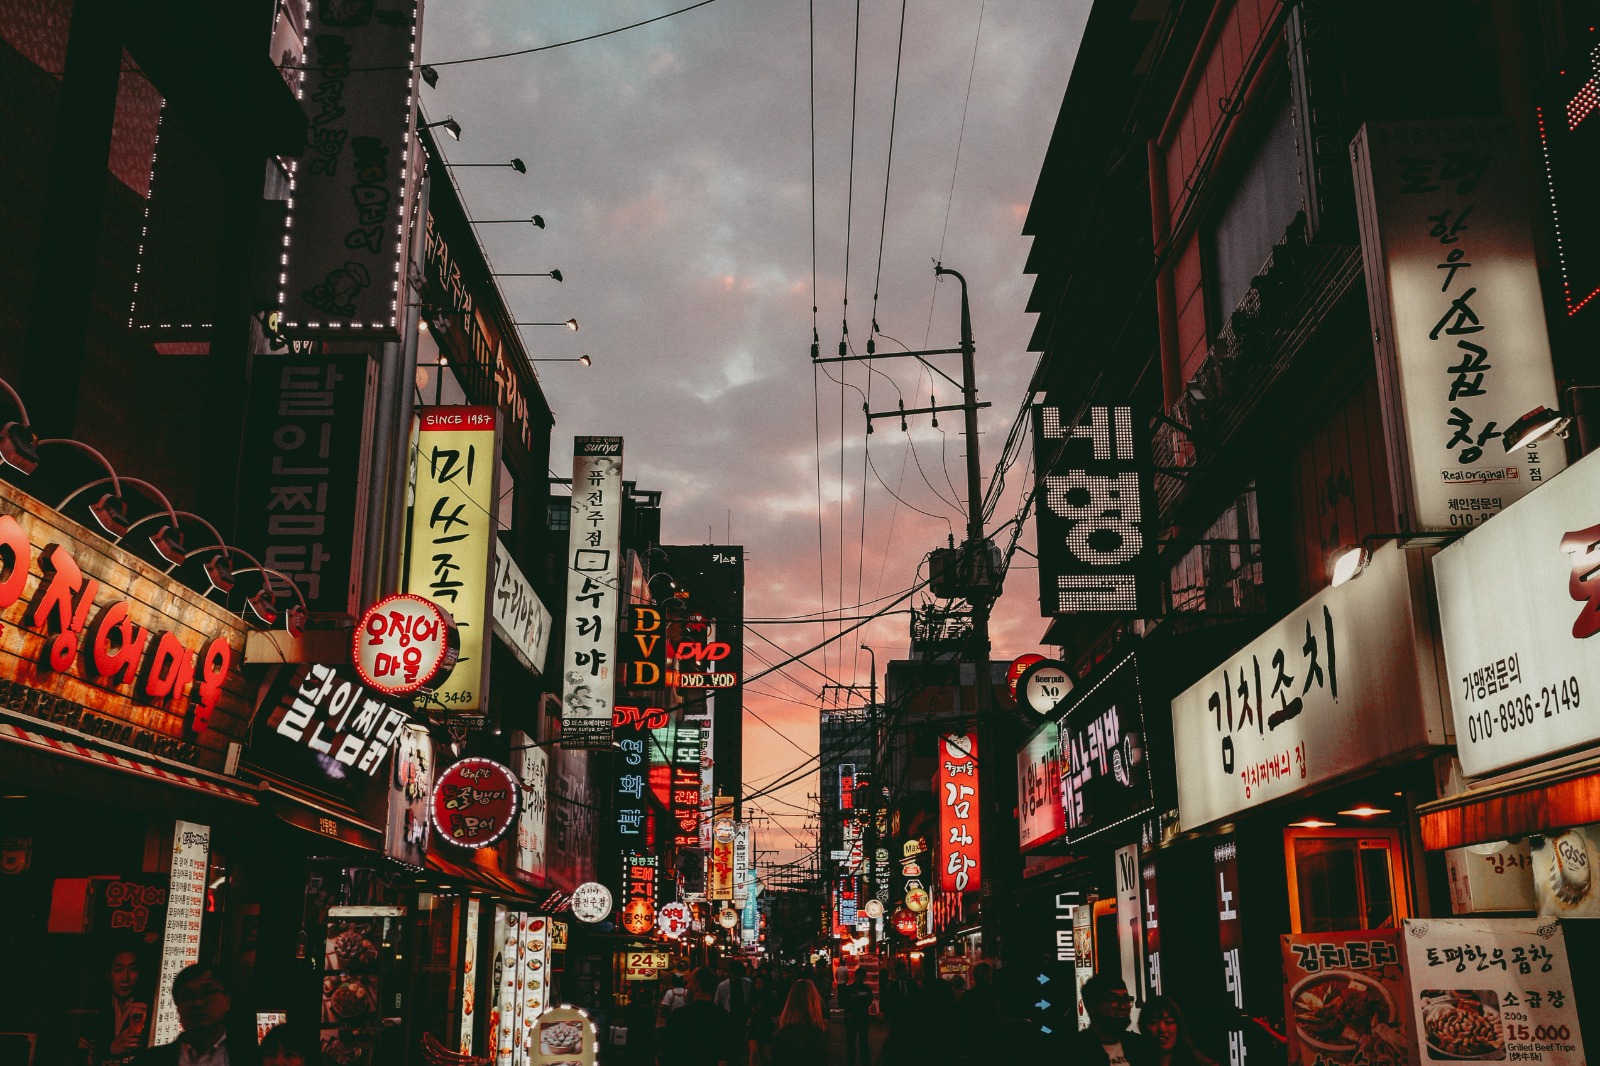 Pergi Liburan ke Korea Selatan Tanpa Visa Emang Bisa? Yuk Simak Penjeleasan Berikut Ini 